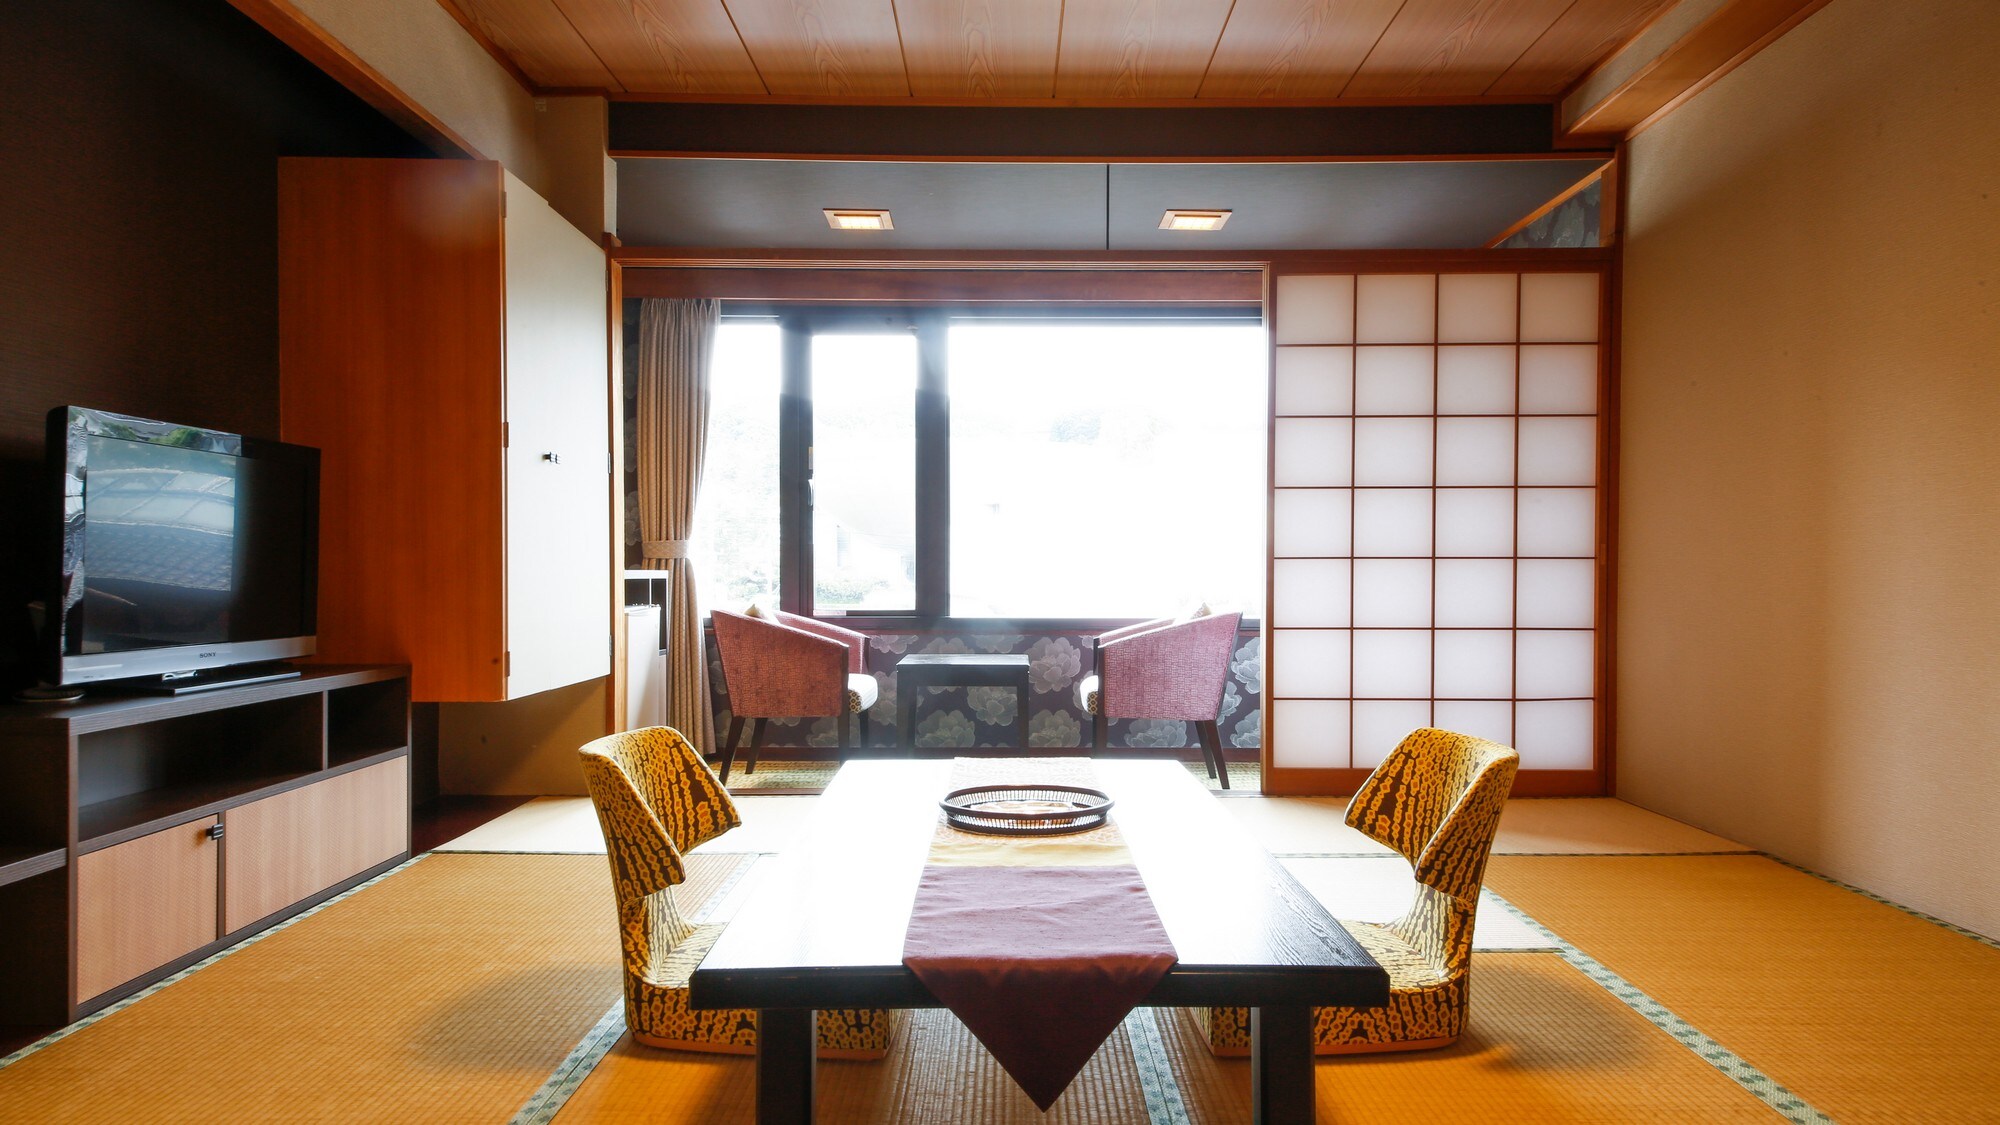 Izumo Concept ห้องสไตล์ญี่ปุ่น <Kaun-KAUN> ห้องนี้สร้างจากภาพของประเทศในตำนาน "Izumo"